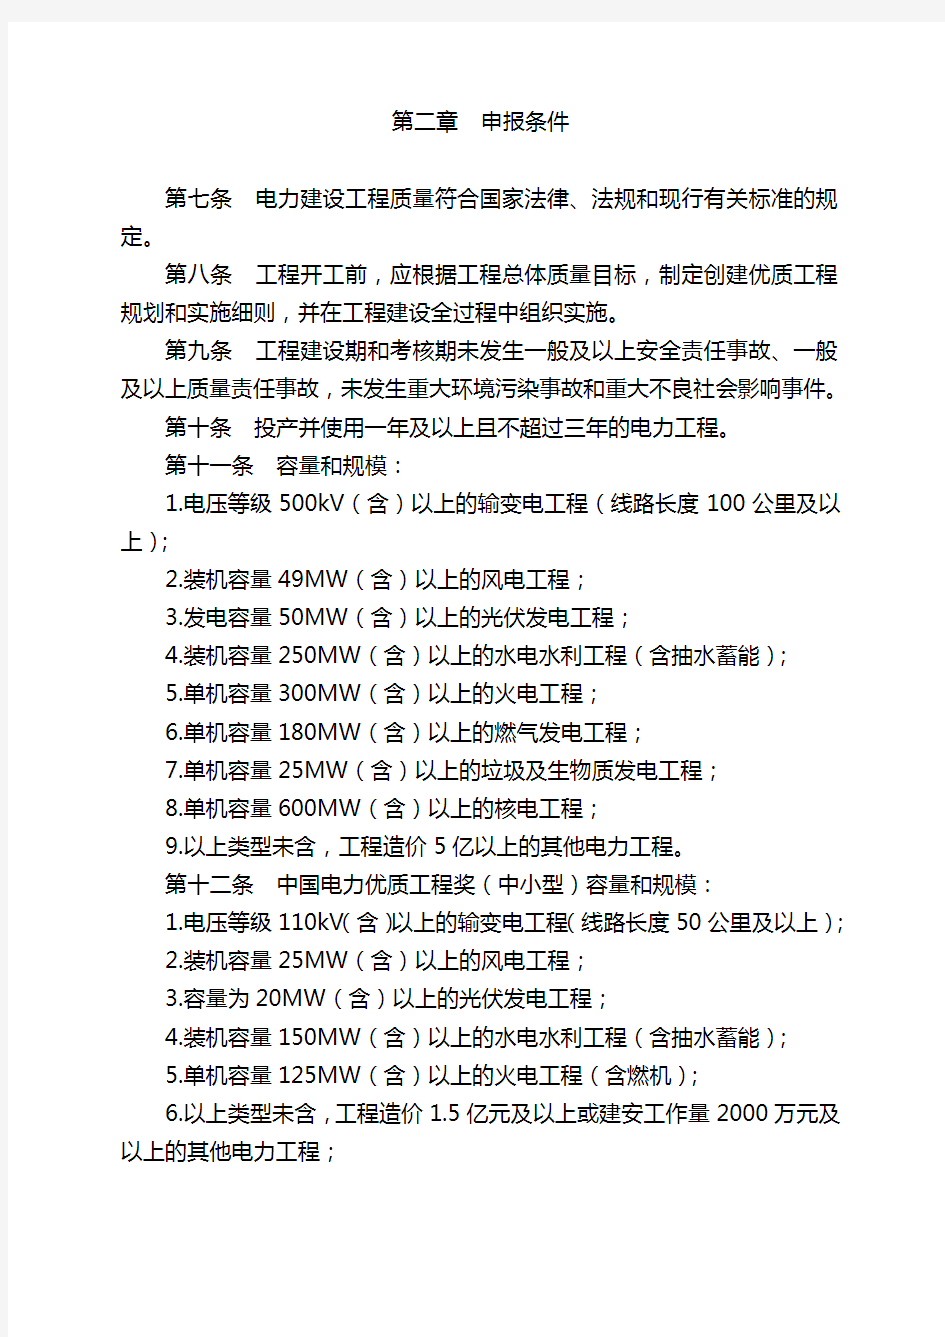 2020年(奖罚制度)中国电力优质工程奖评选办法(版)